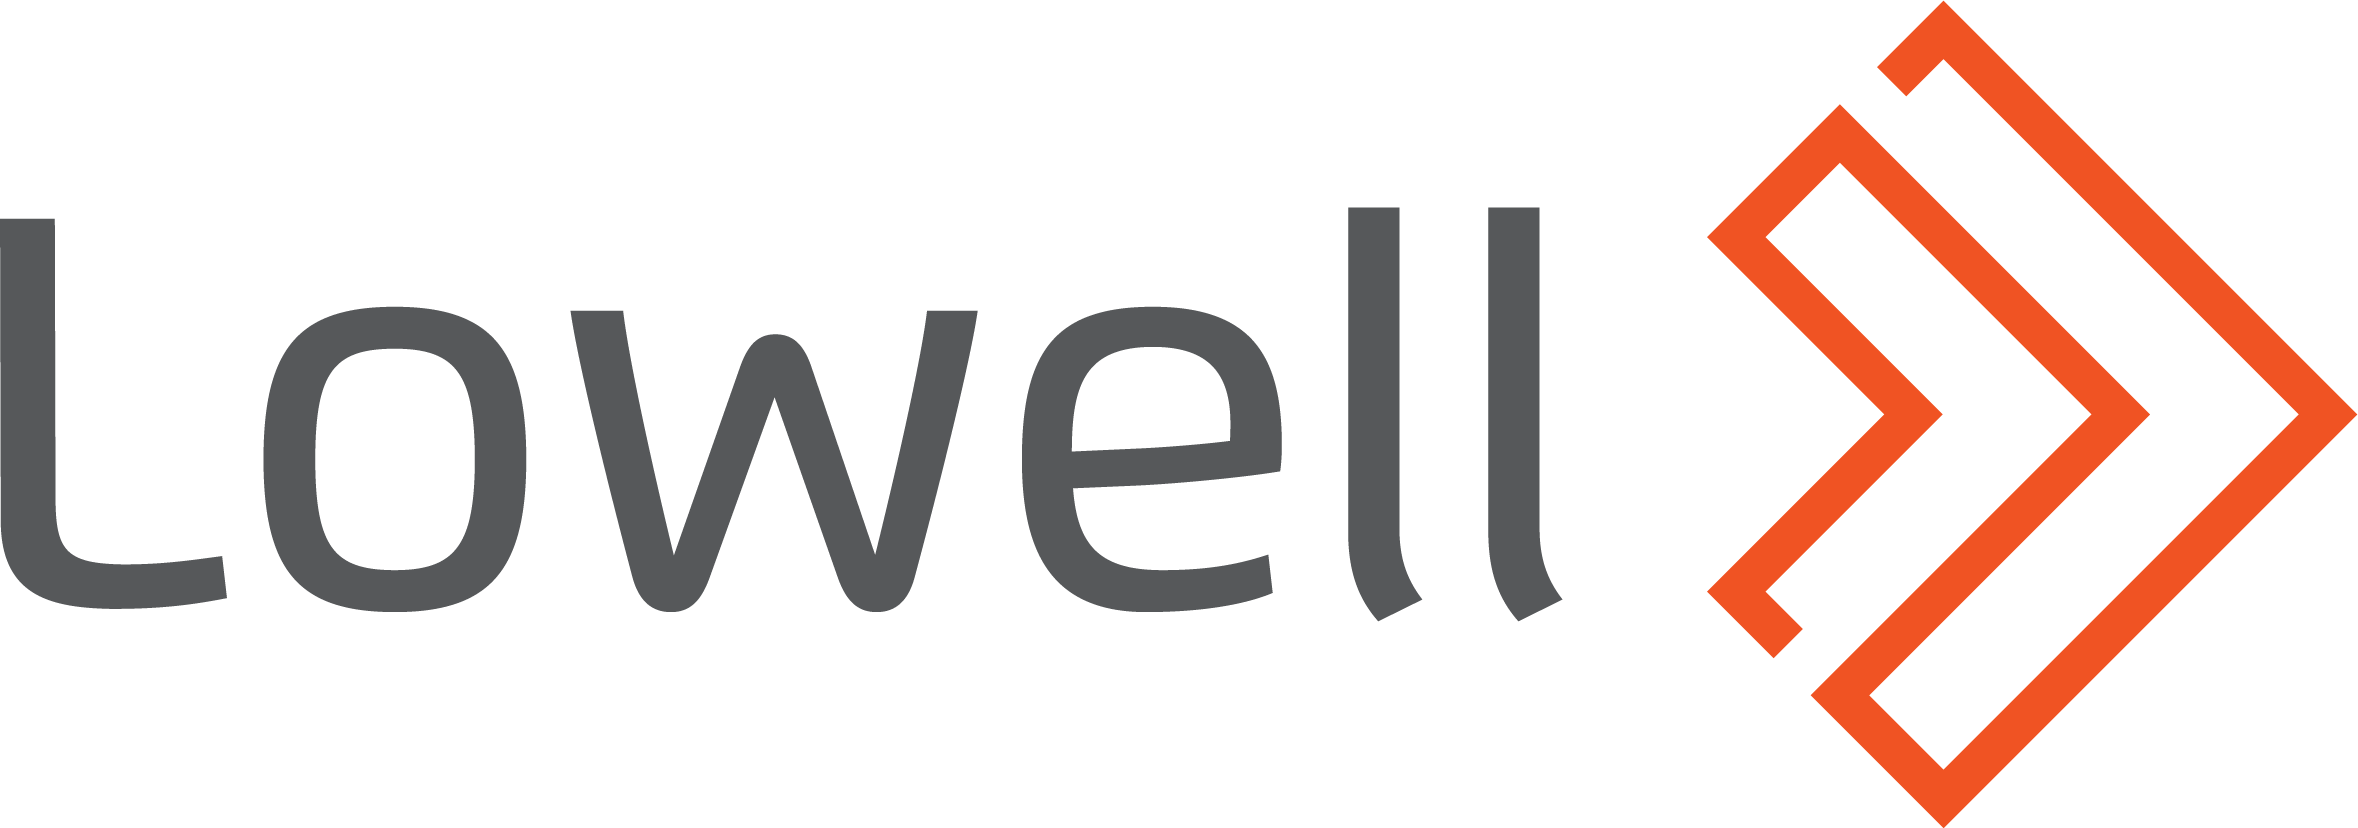 Lowell Financial Ltd